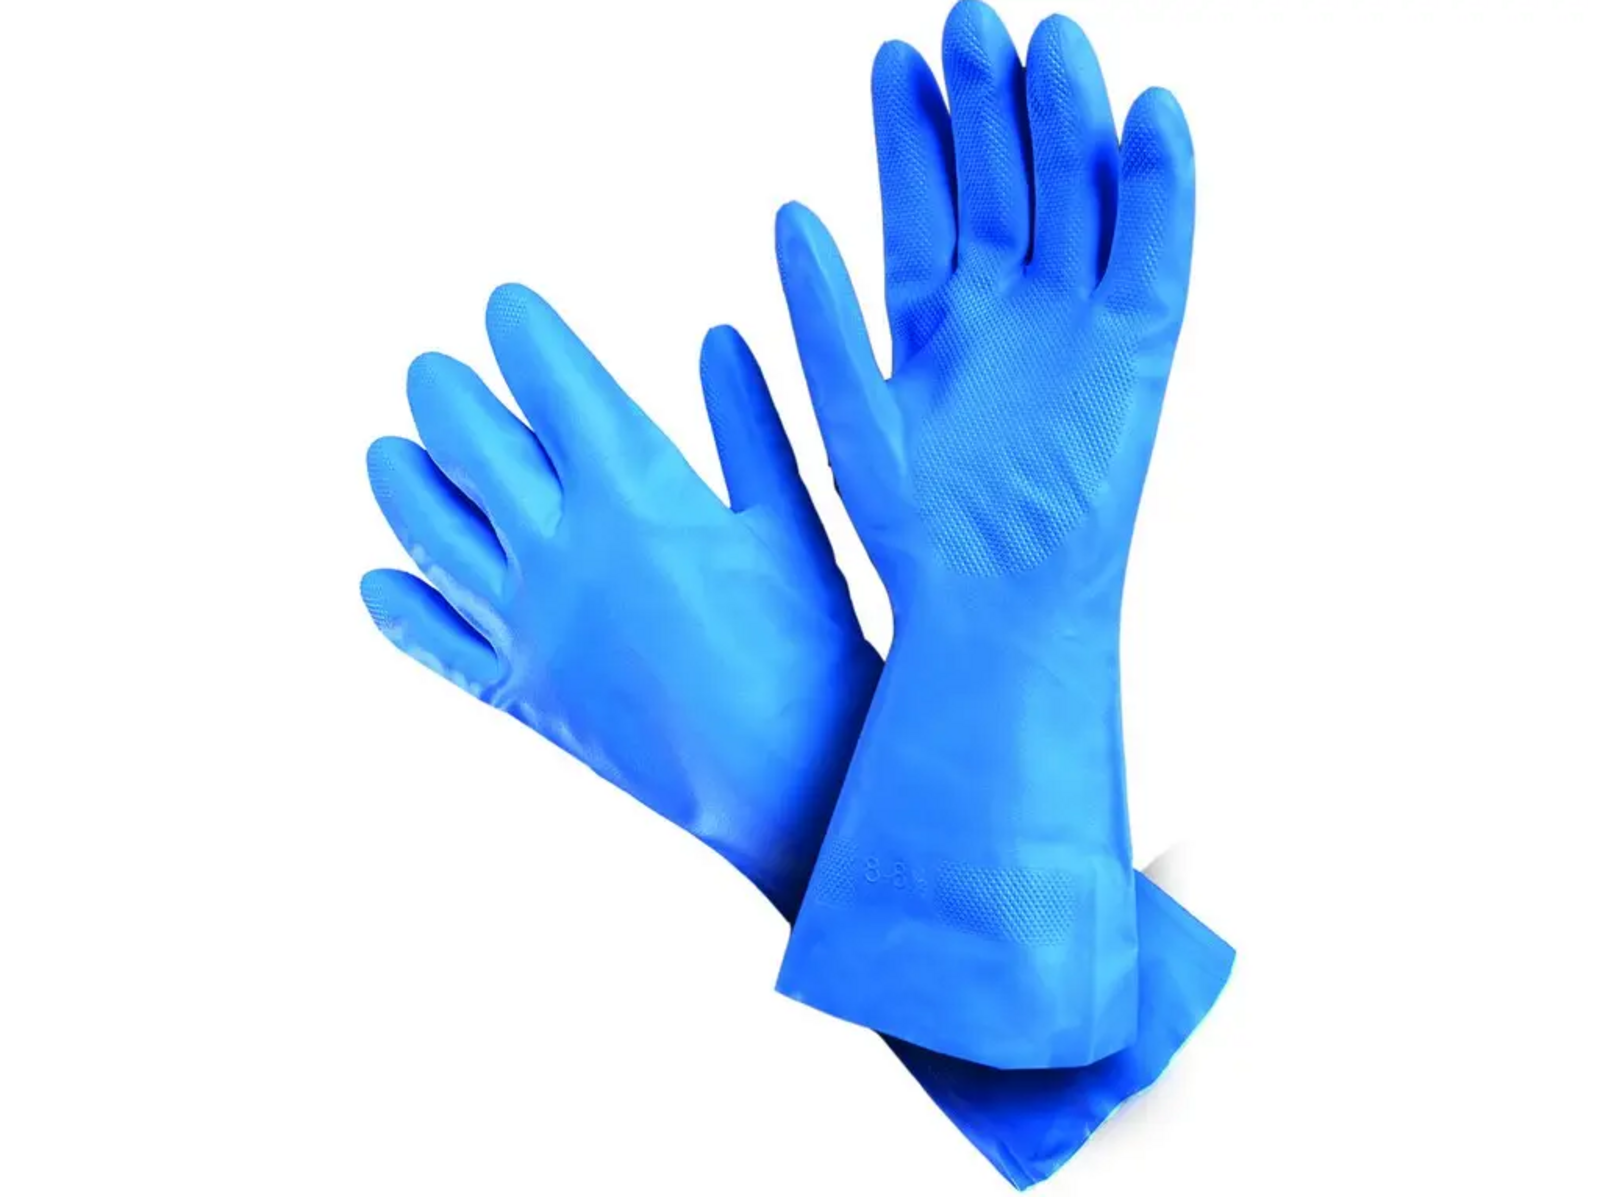 Kyselinovzdorné rukavice Mapa Ultranitril 495 - veľkosť: 7/S, farba: modrá